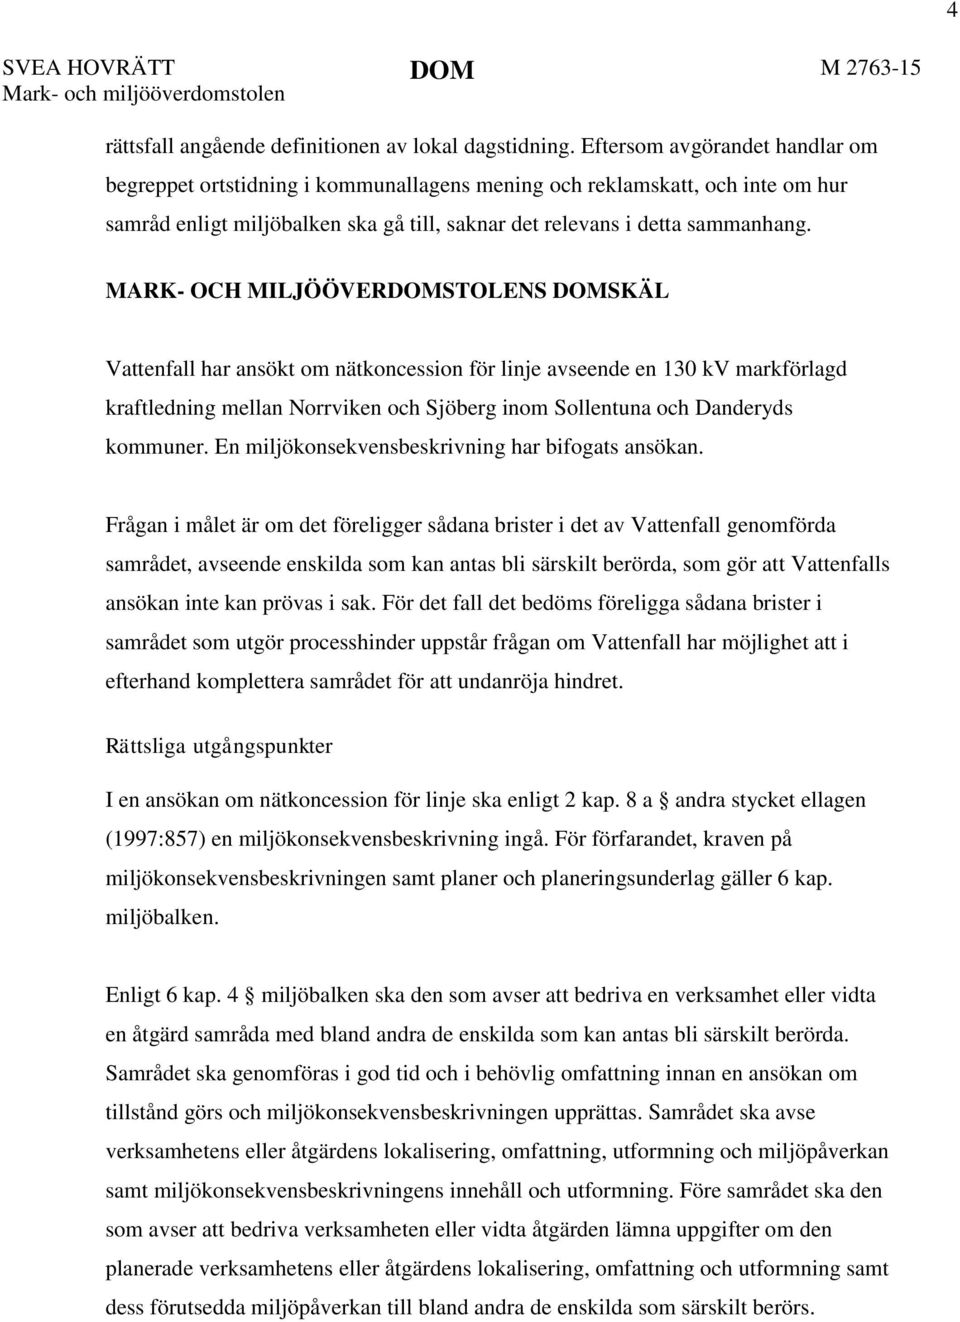 MARK- OCH MILJÖÖVERDOMSTOLENS DOMSKÄL Vattenfall har ansökt om nätkoncession för linje avseende en 130 kv markförlagd kraftledning mellan Norrviken och Sjöberg inom Sollentuna och Danderyds kommuner.